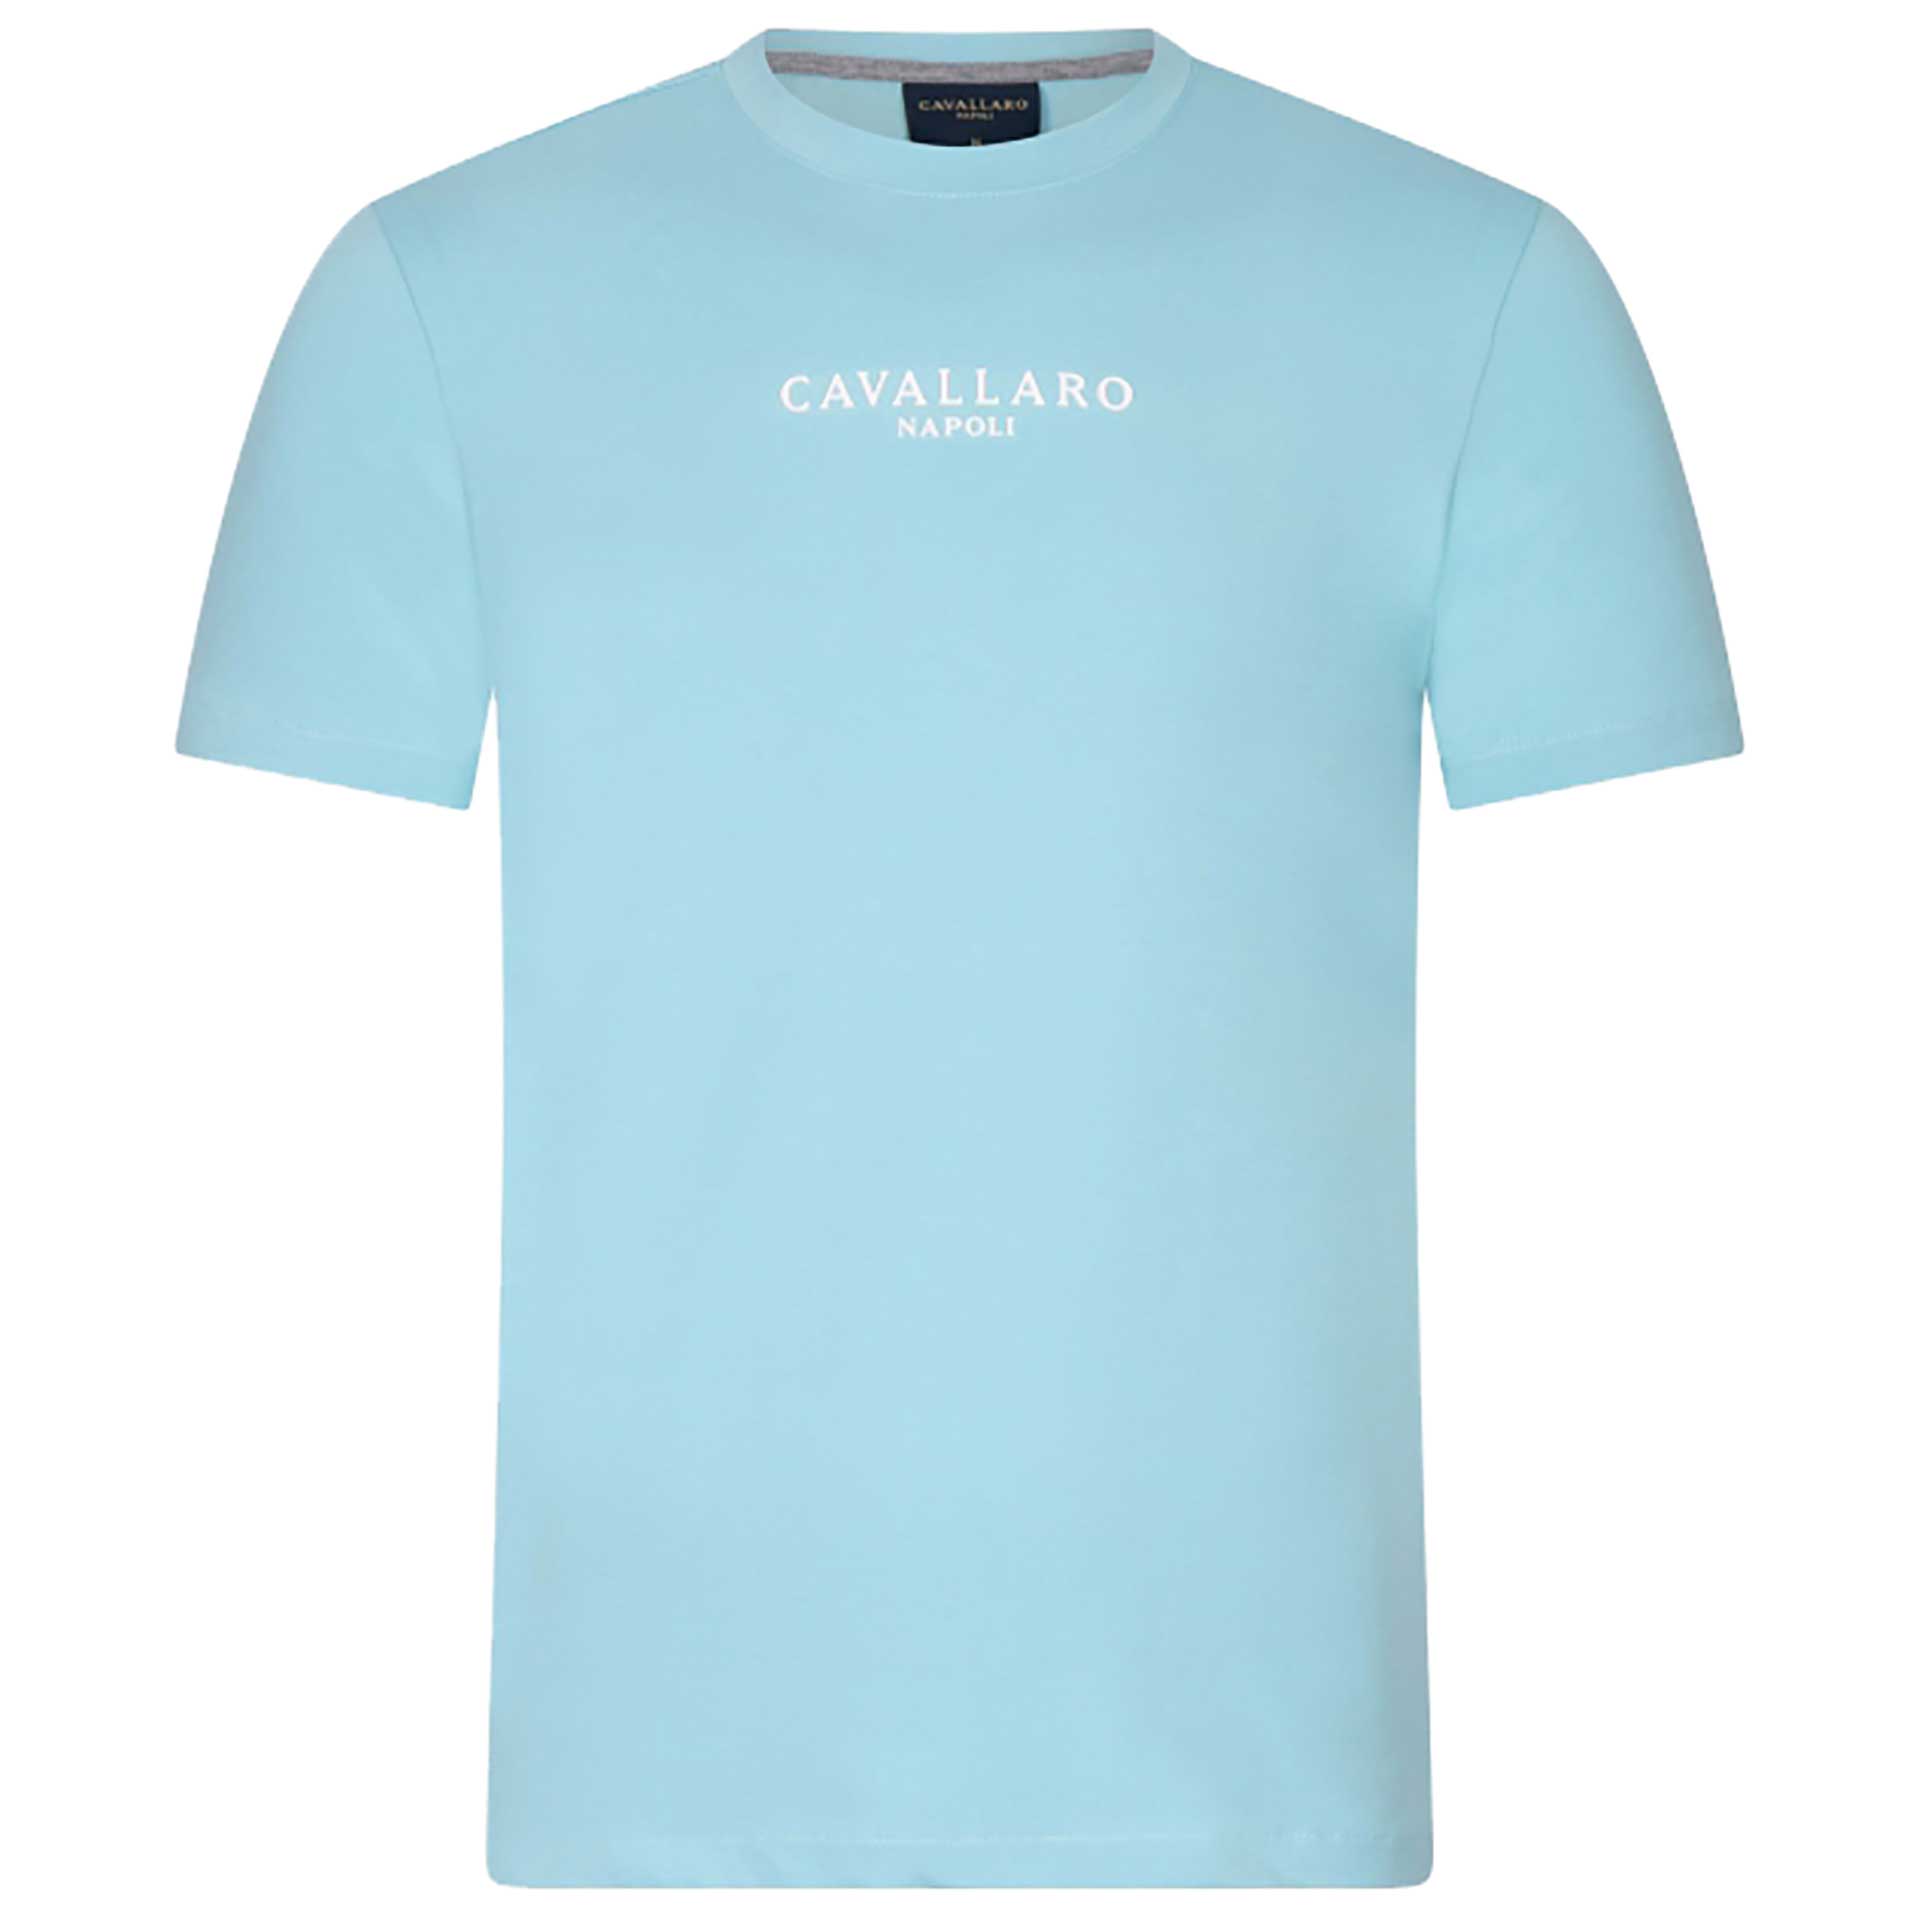 Cavallaro Napoli T-Shirt Mandrio